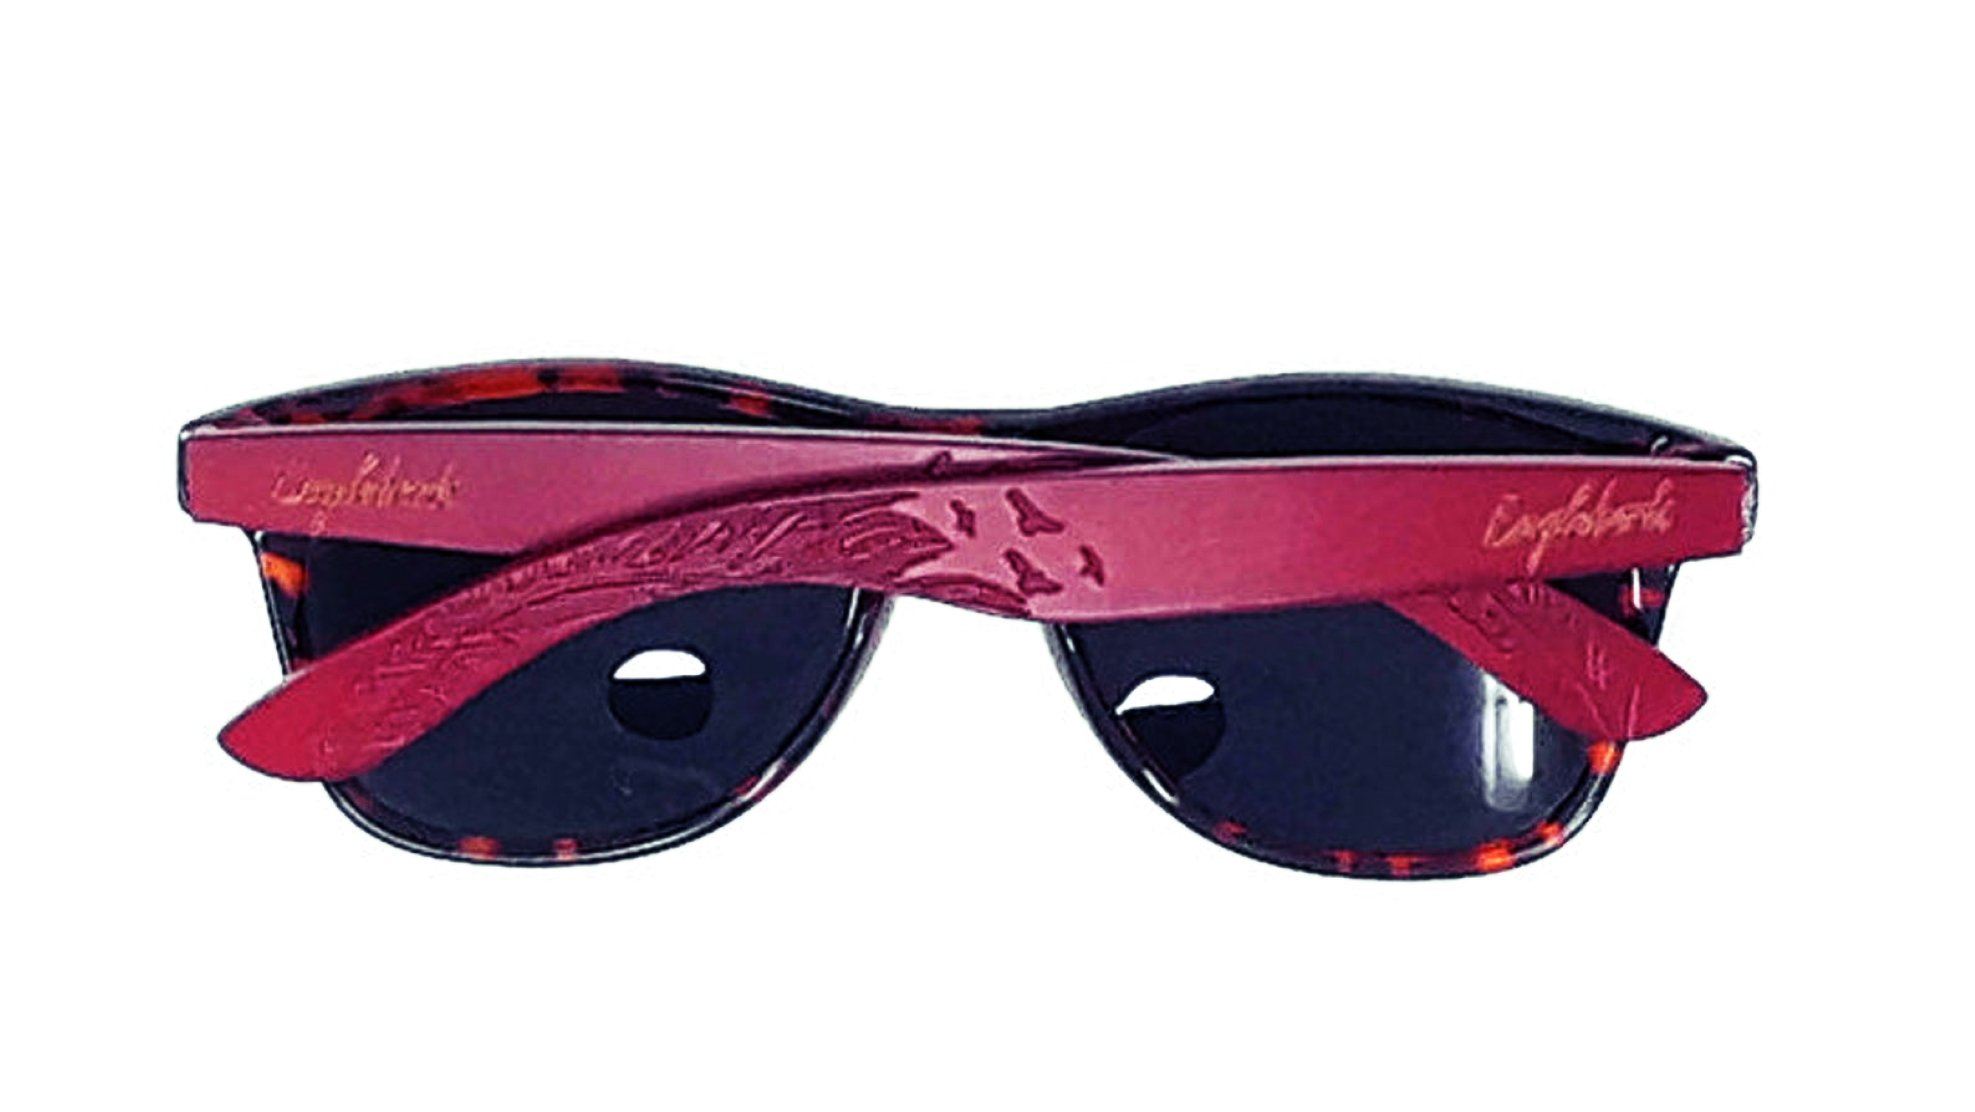 Red Bamboo Tortoise Framed Sunglasses, Polarized, Engraved Sunglasses 